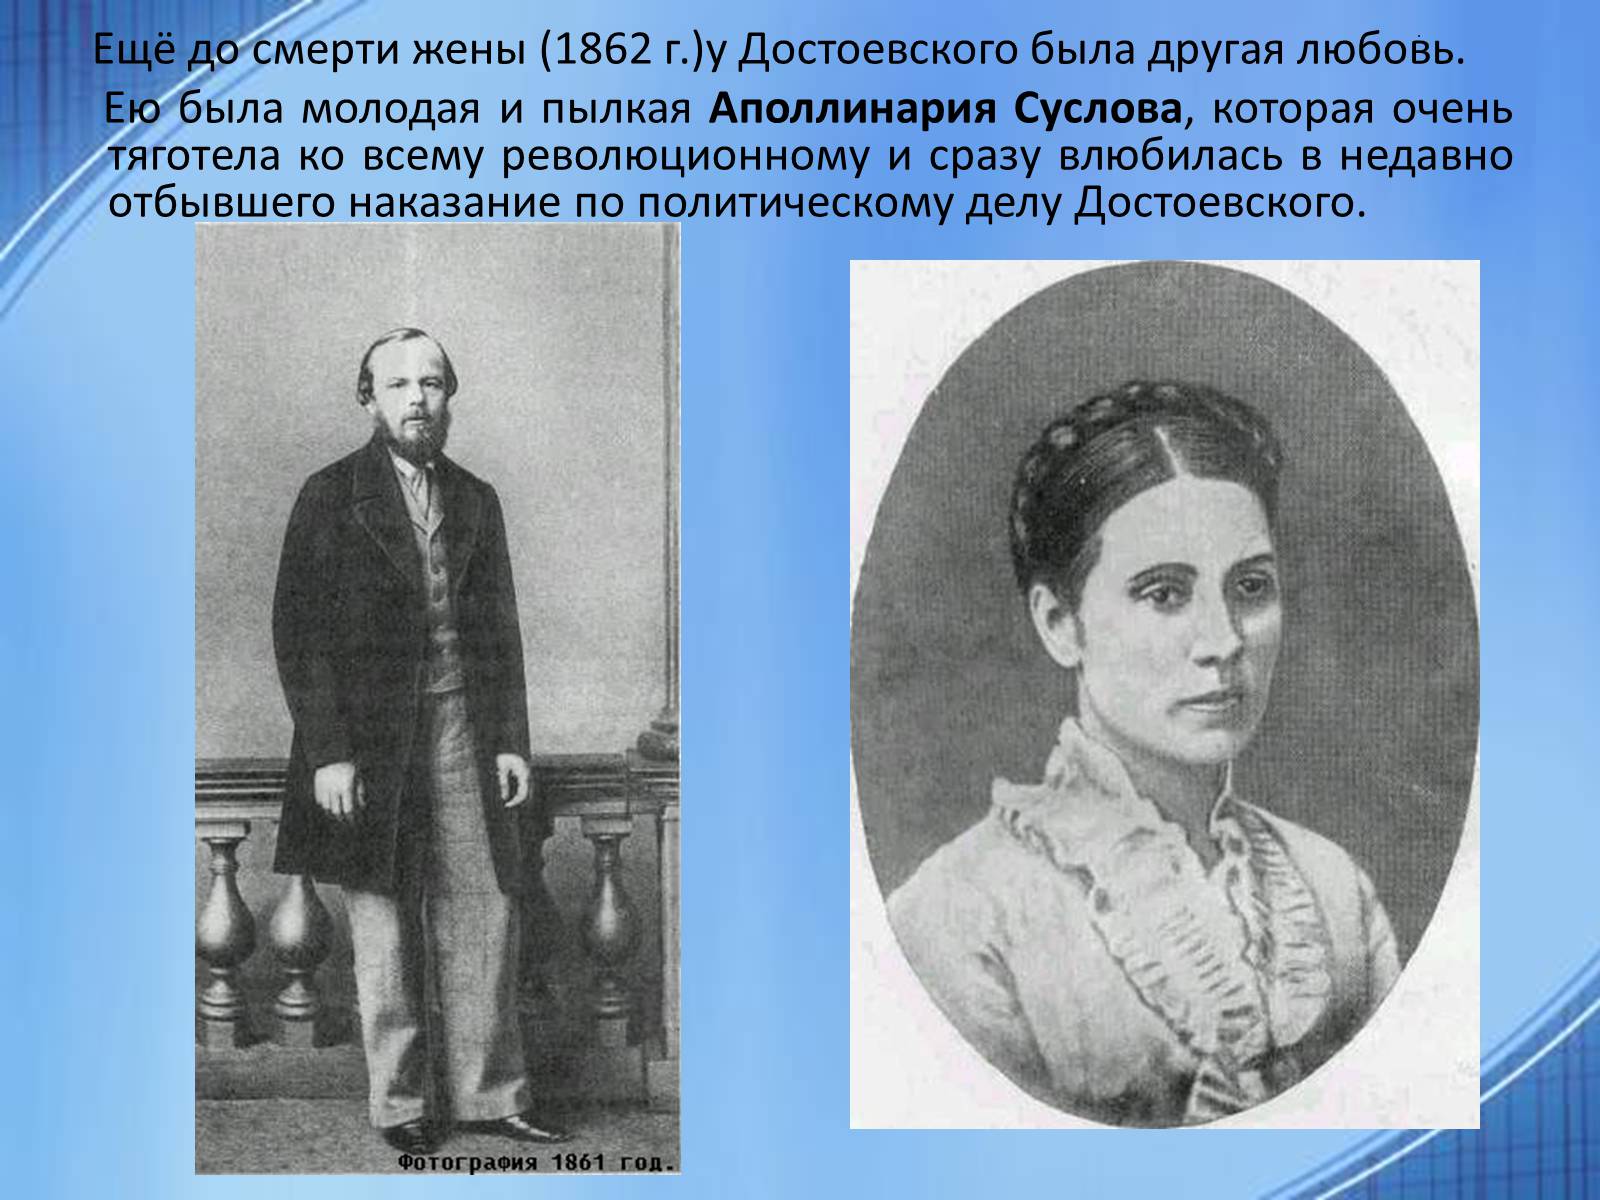 Аполлинария Суслова жена Достоевского